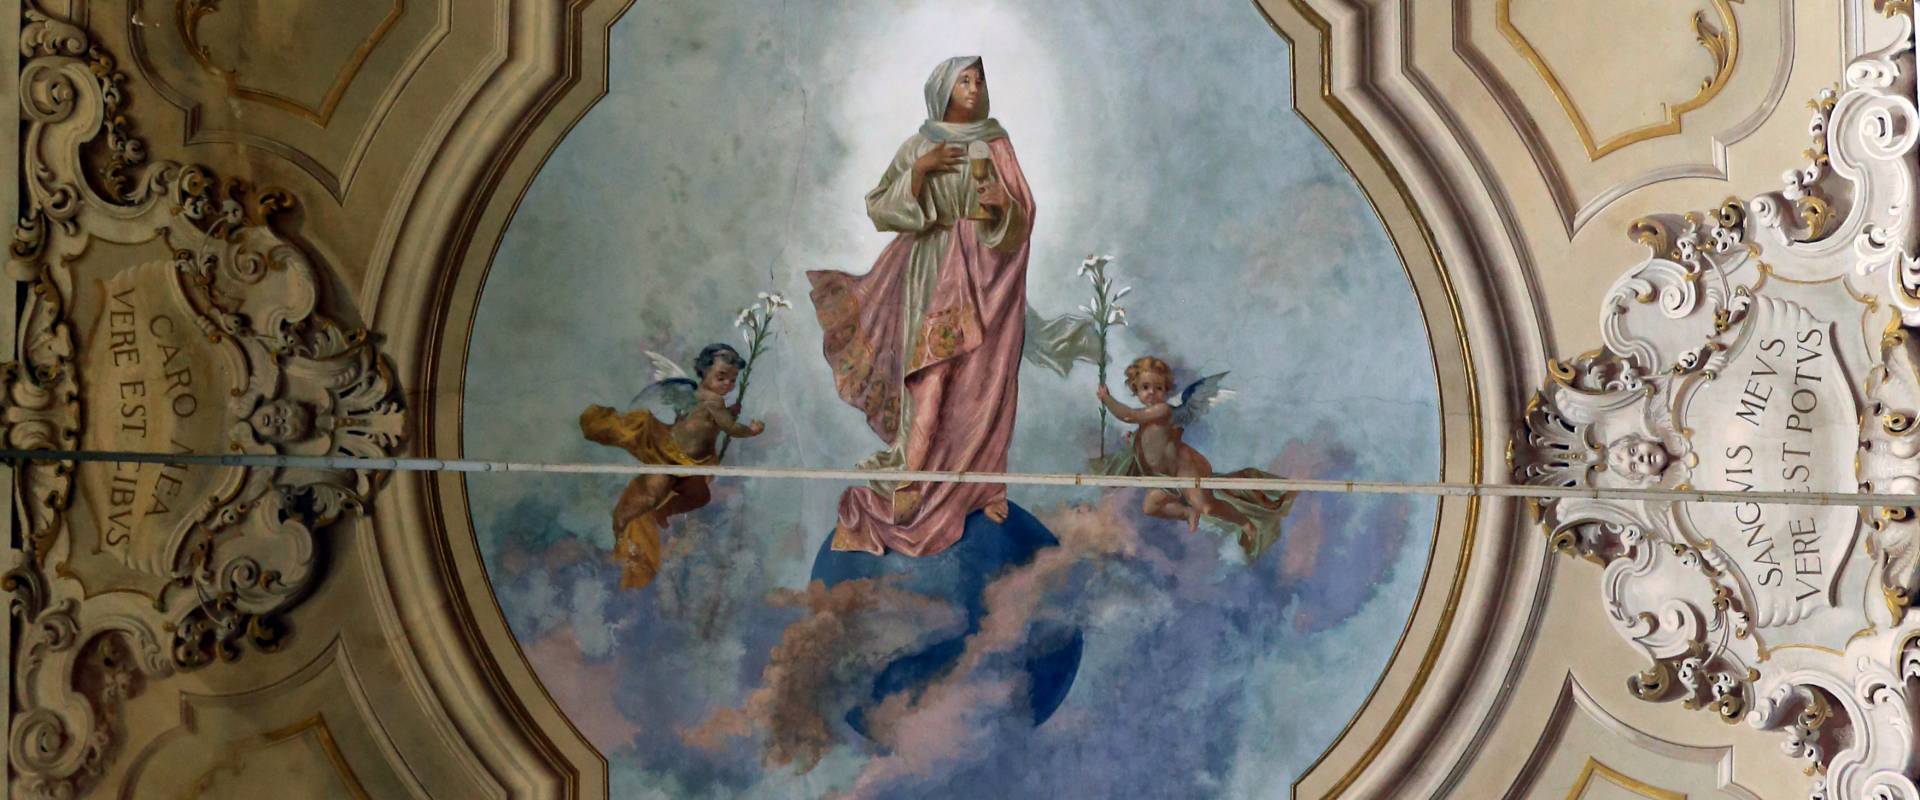 Forlì, san mercuriale, interno, cappella del ss. sacramento, esaltazione dell'eucaristia, xix-xx secolo photo by Sailko